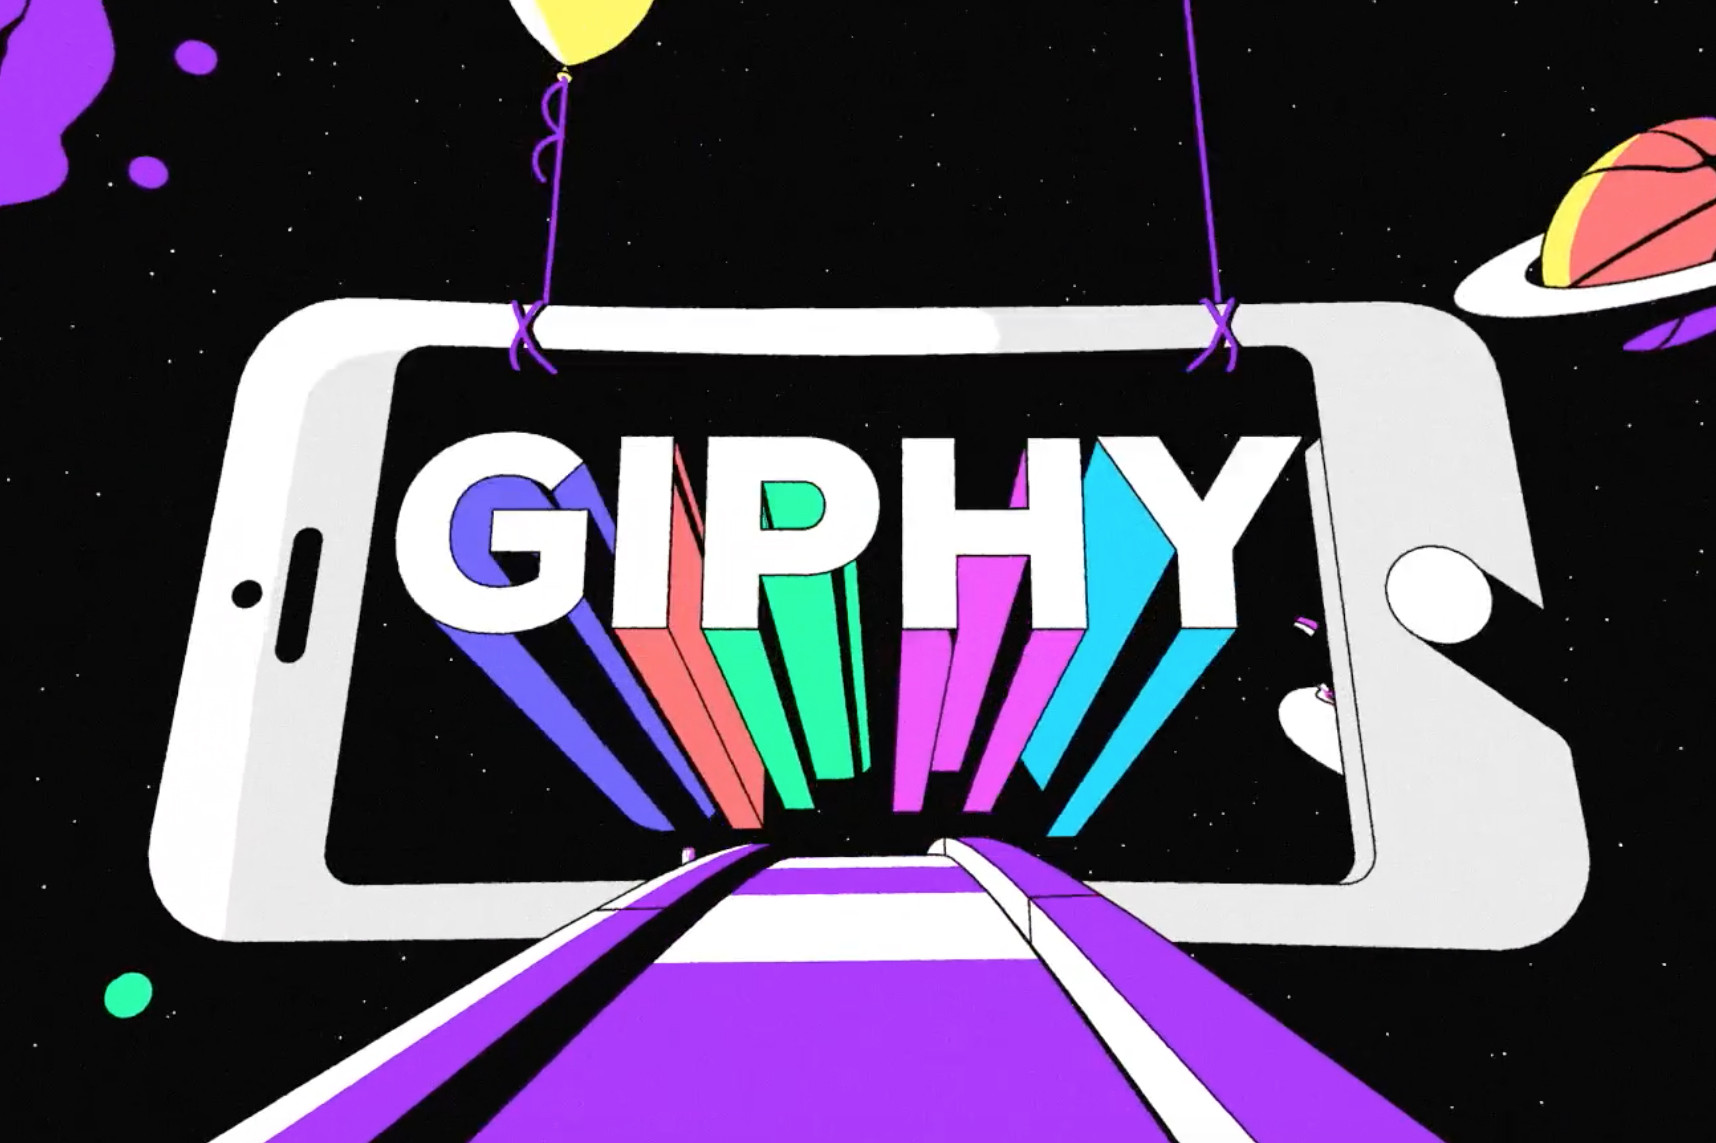  Giphy  lanza su propia plataforma para compartir v deos 